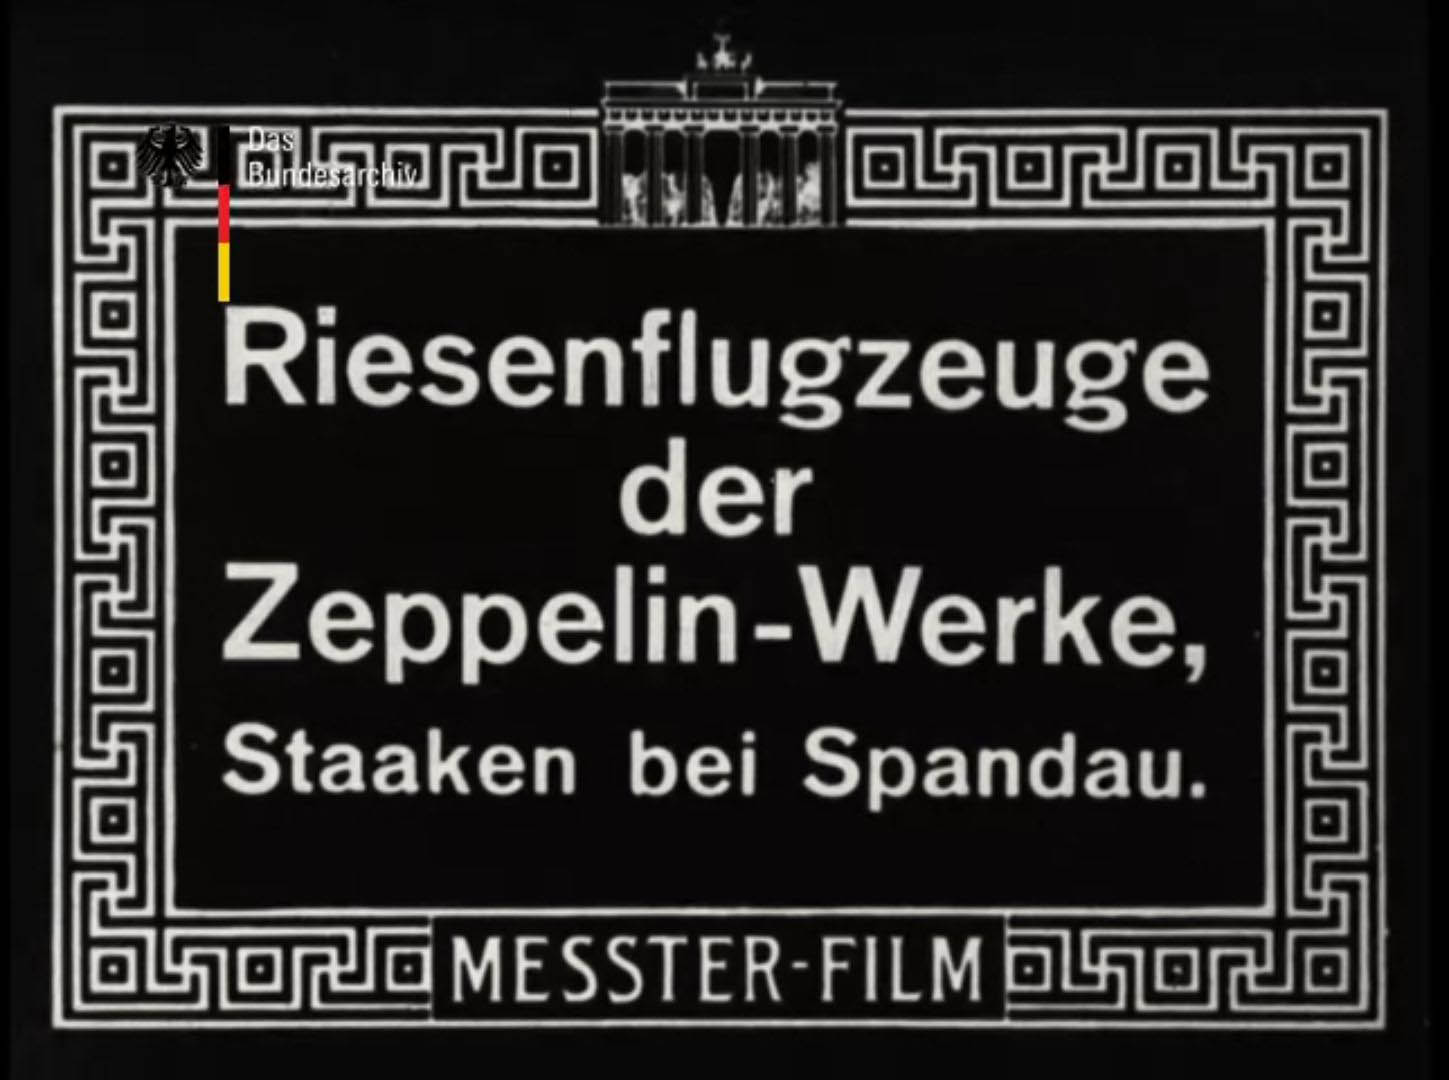 Film Bundesarchiv 01